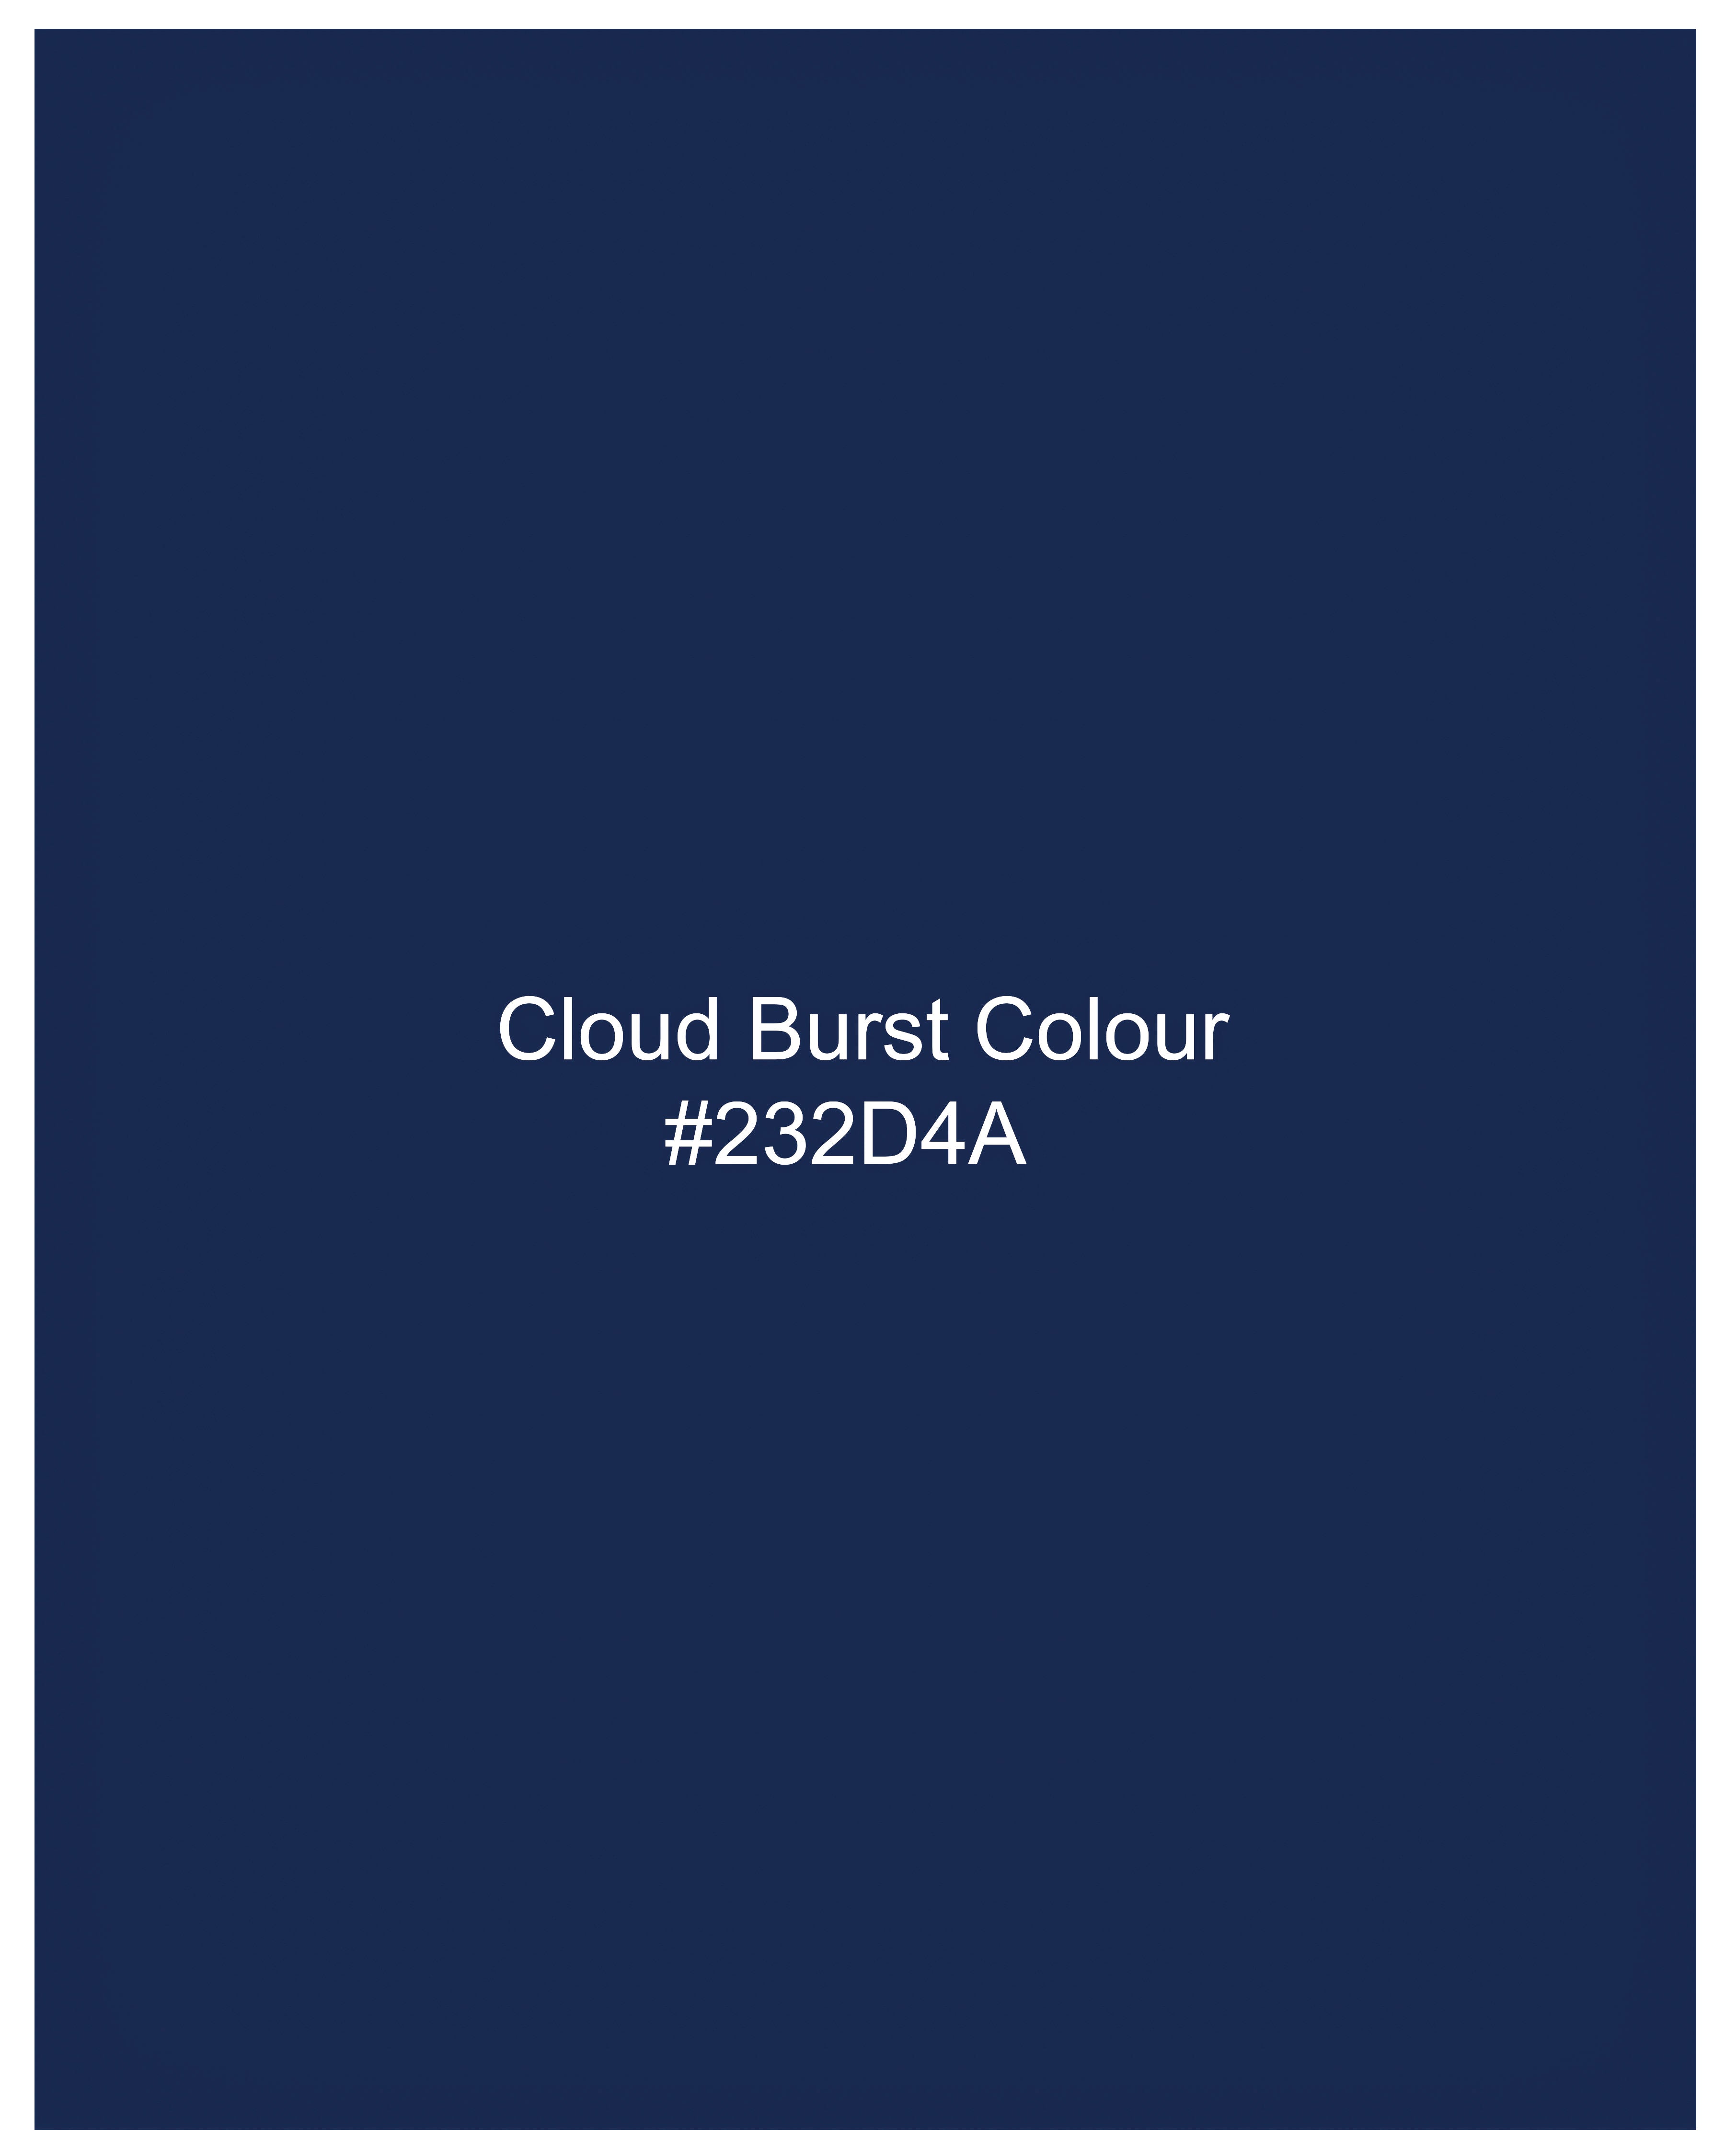 Cloud Burst Blue Subtle Sheen Subtle Sheen Super Soft Premium Cotton Shirt 8871-BLK-38, 8871-BLK-H-38, 8871-BLK-39, 8871-BLK-H-39, 8871-BLK-40, 8871-BLK-H-40, 8871-BLK-42, 8871-BLK-H-42, 8871-BLK-44, 8871-BLK-H-44, 8871-BLK-46, 8871-BLK-H-46, 8871-BLK-48, 8871-BLK-H-48, 8871-BLK-50, 8871-BLK-H-50, 8871-BLK-52, 8871-BLK-H-52A